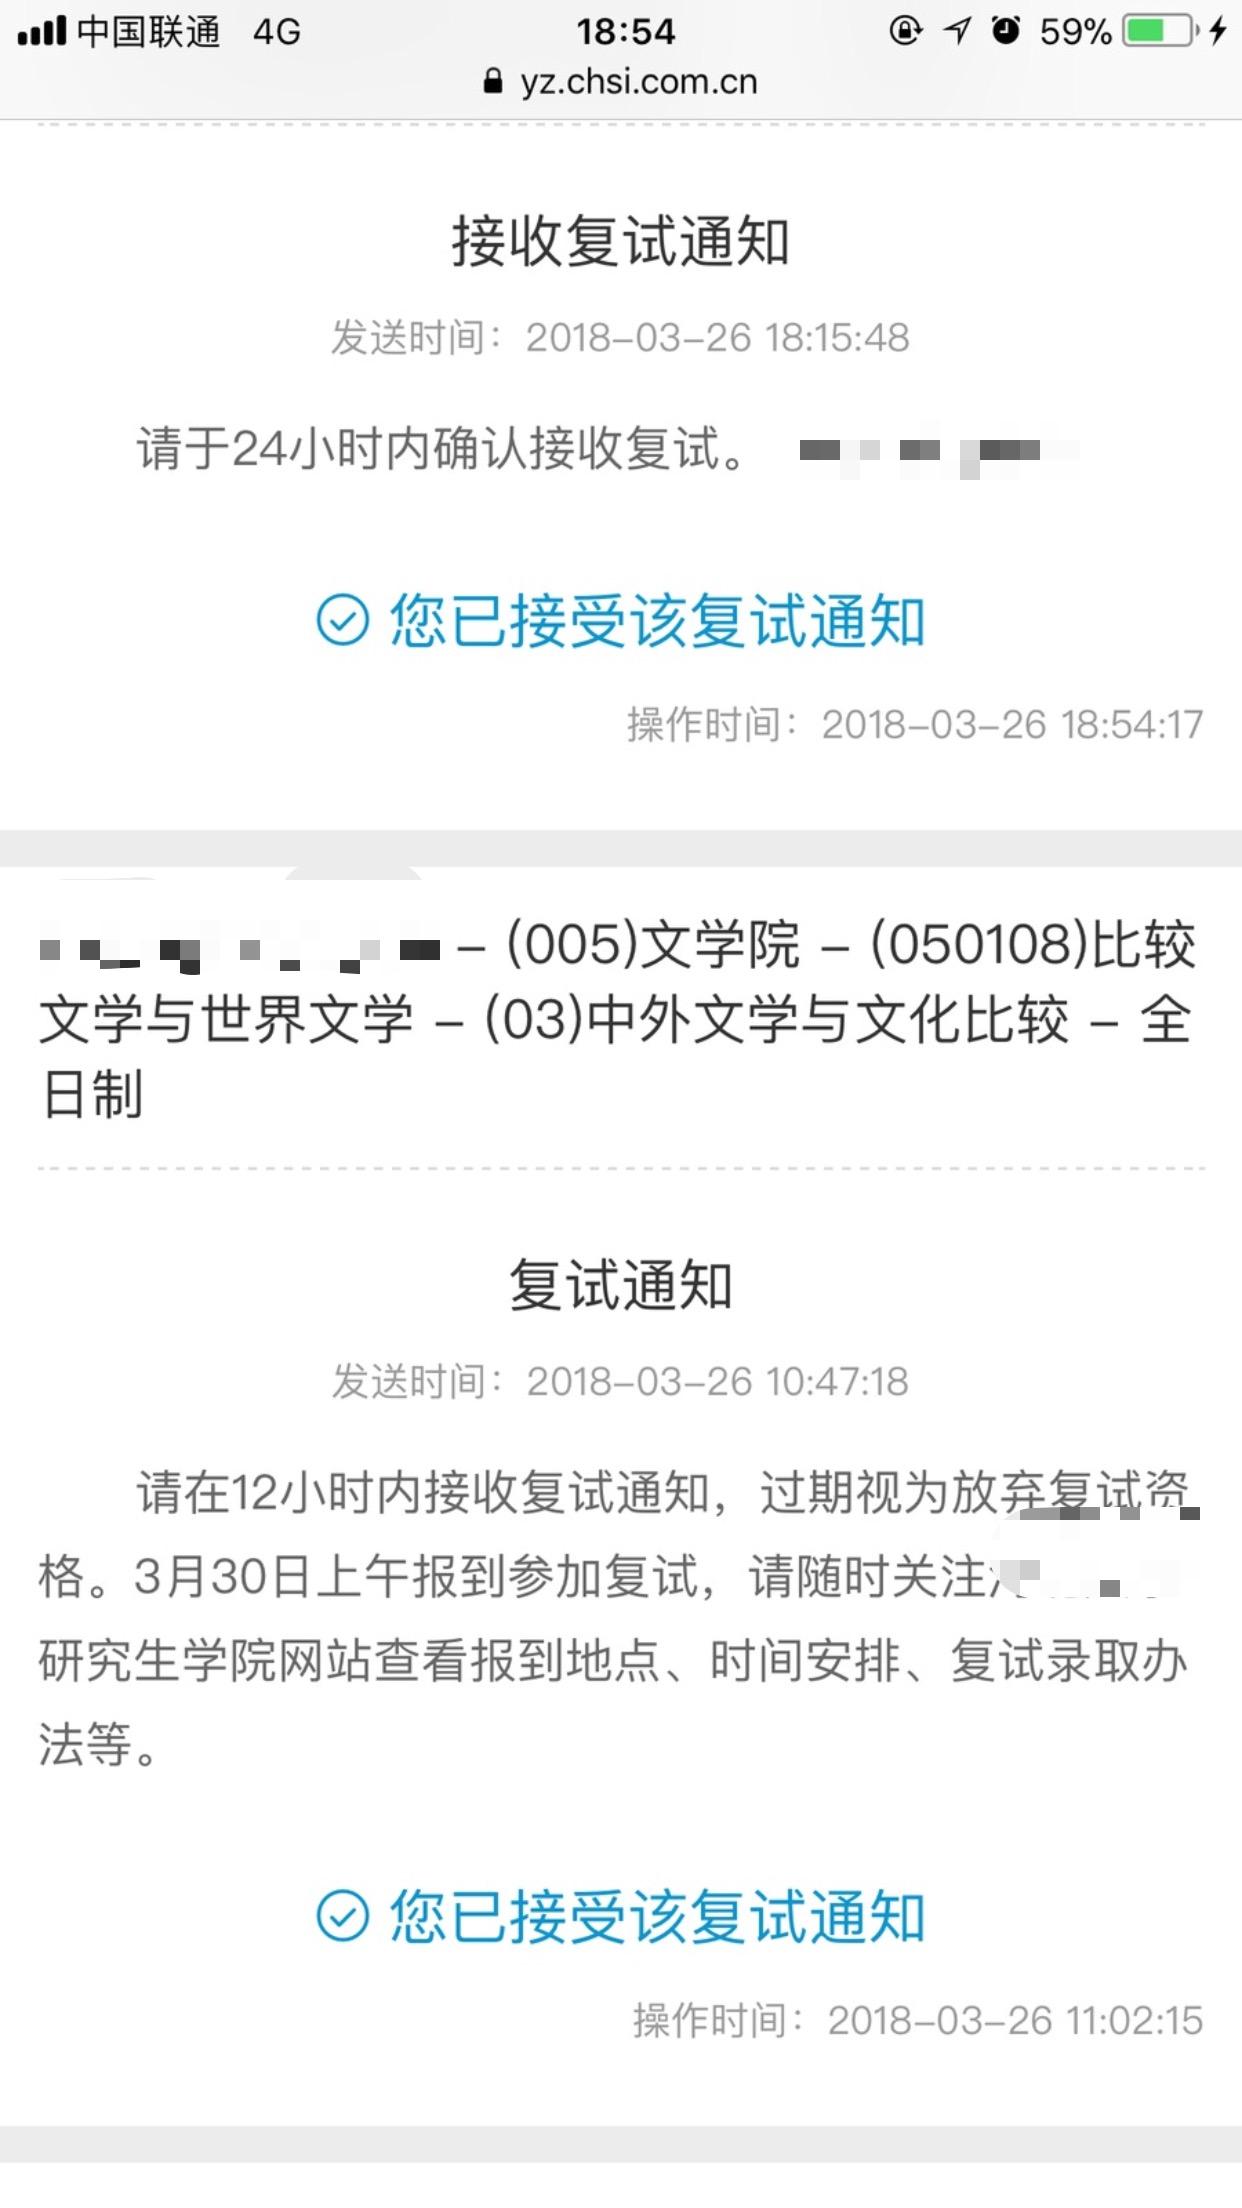 国考笔试成绩1月8日公布 1月9日起可申请调剂- 上海本地宝